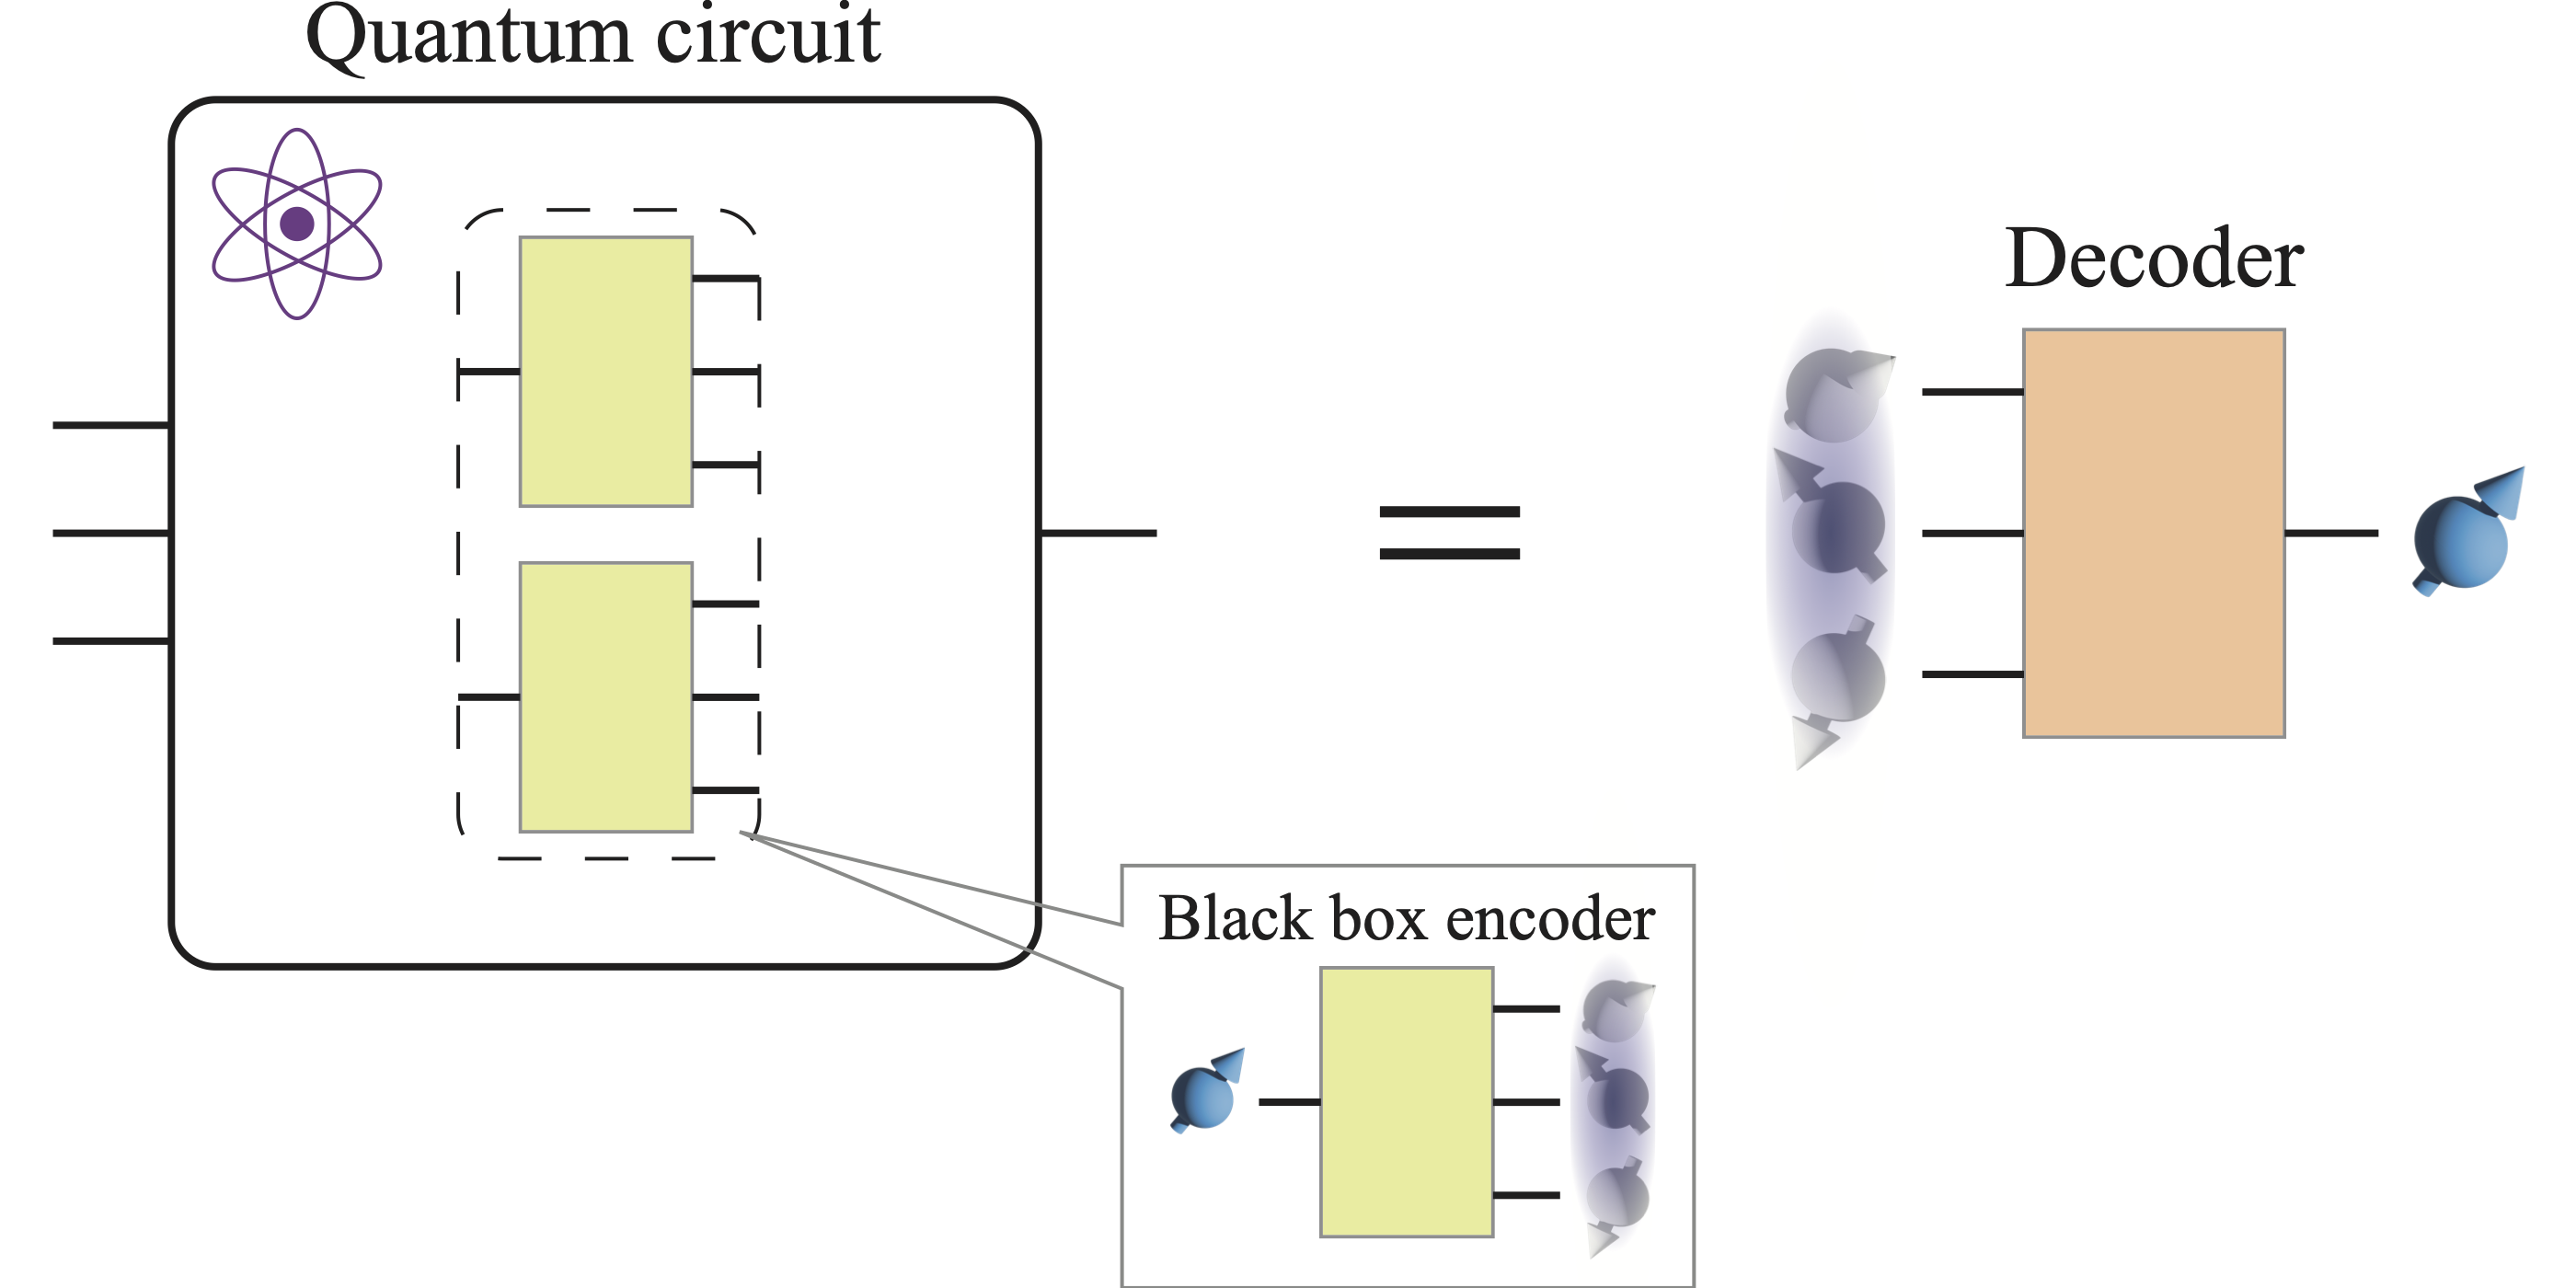 Construcción universal de decodificadores a partir de la codificación de cajas negras.